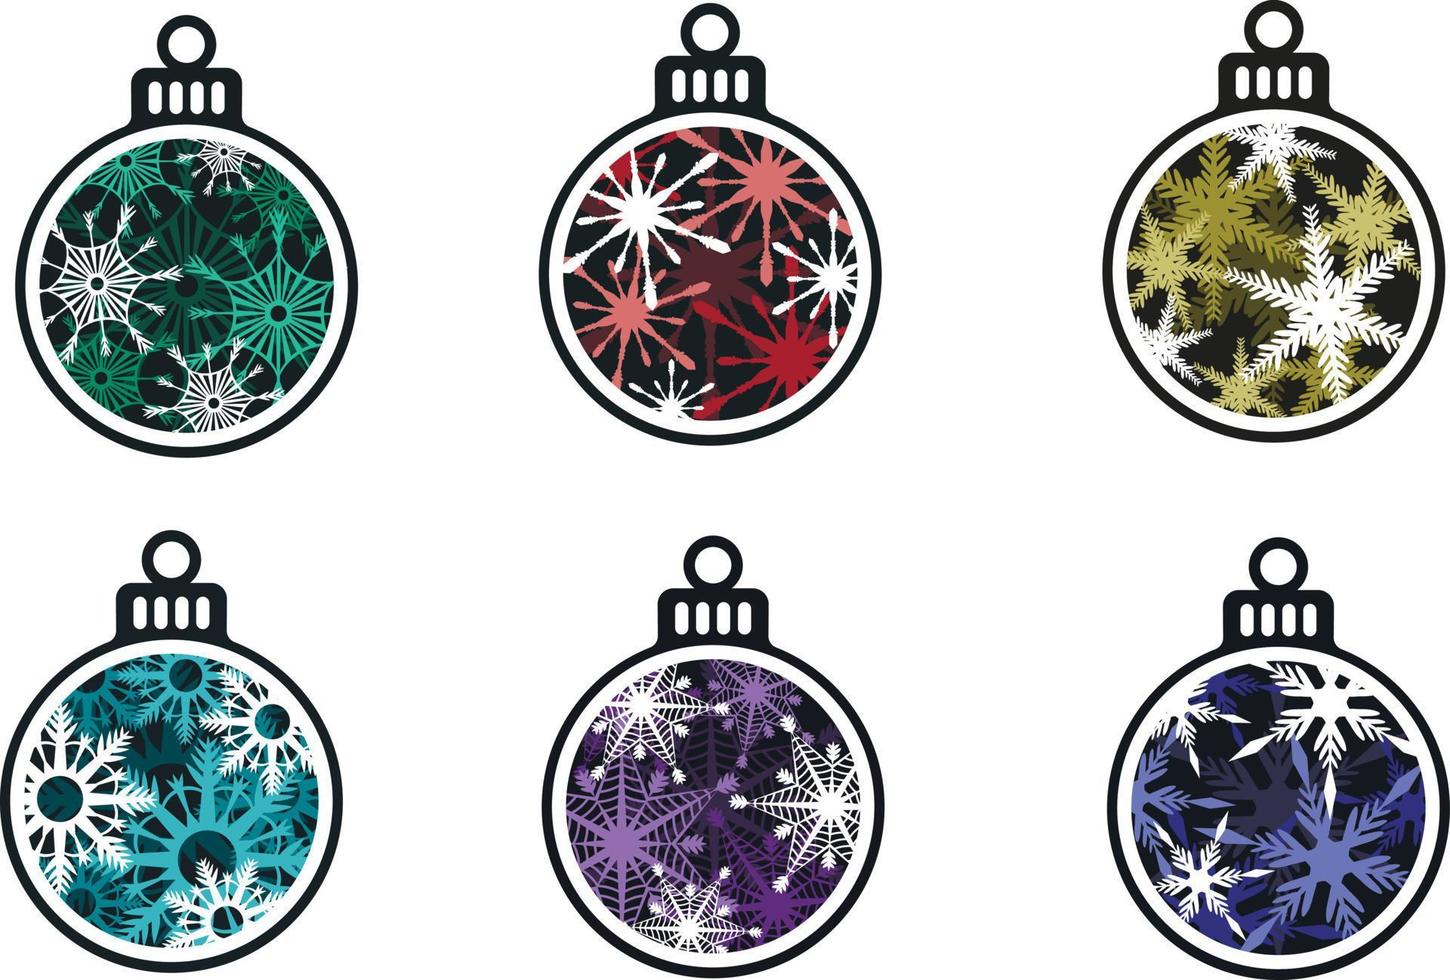 3d Kerstmis decoraties in de het formulier van ballen met een volumetrisch ontwerp van sneeuwvlokken vector